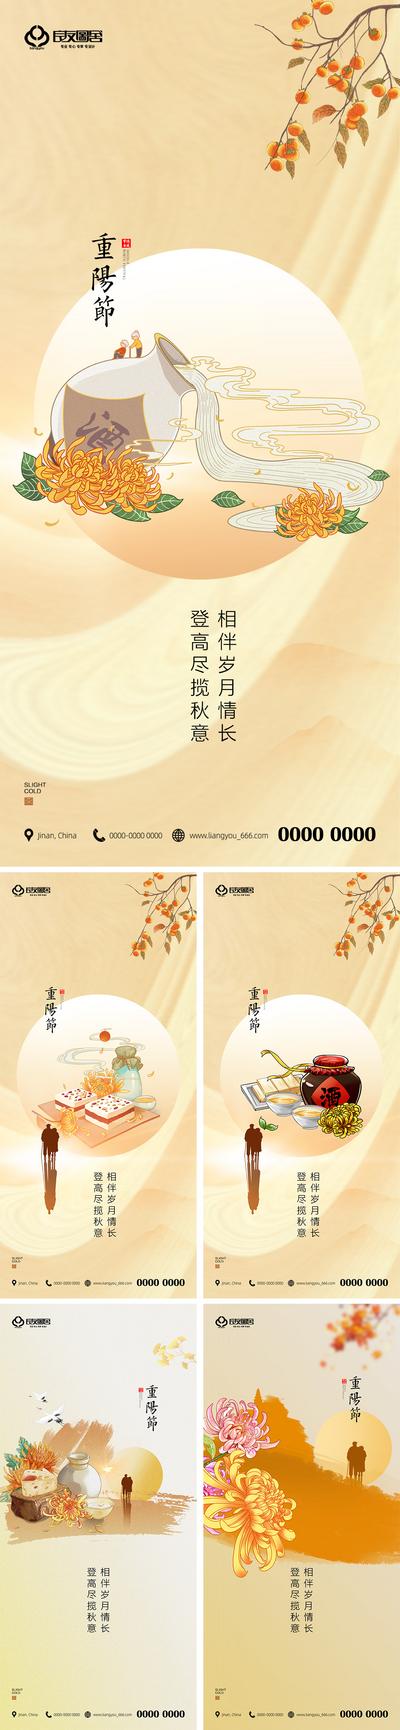 南门网 海报 房地产 中国传统节日 重阳节 插画 系列